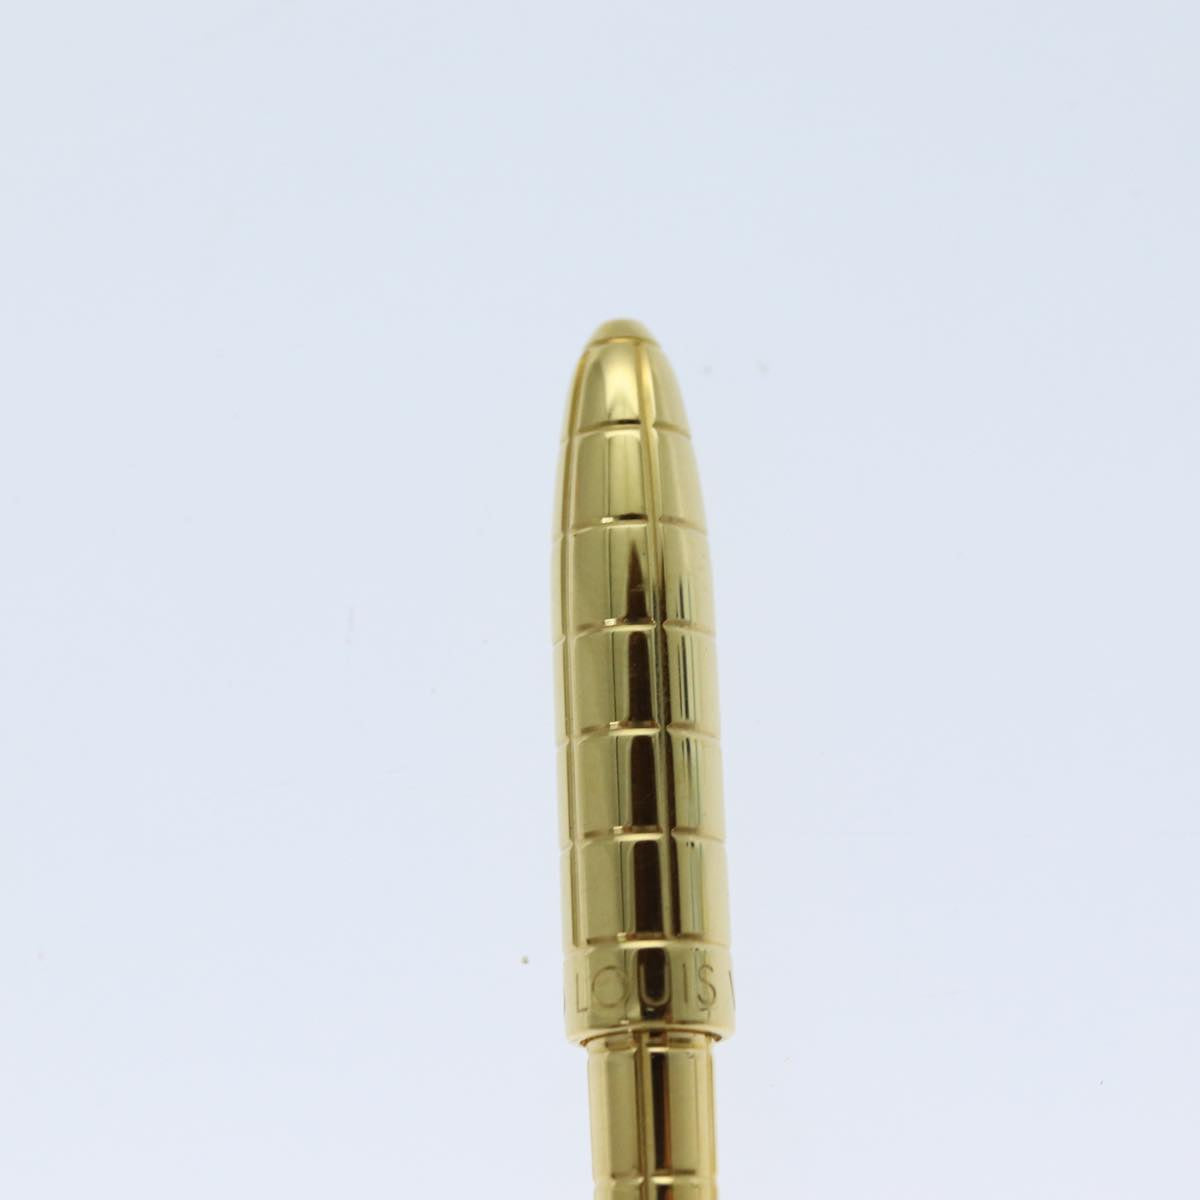 LOUIS VUITTON Styro Agenda Ballpoint Pen metal Gold Tone LV Auth ki4516